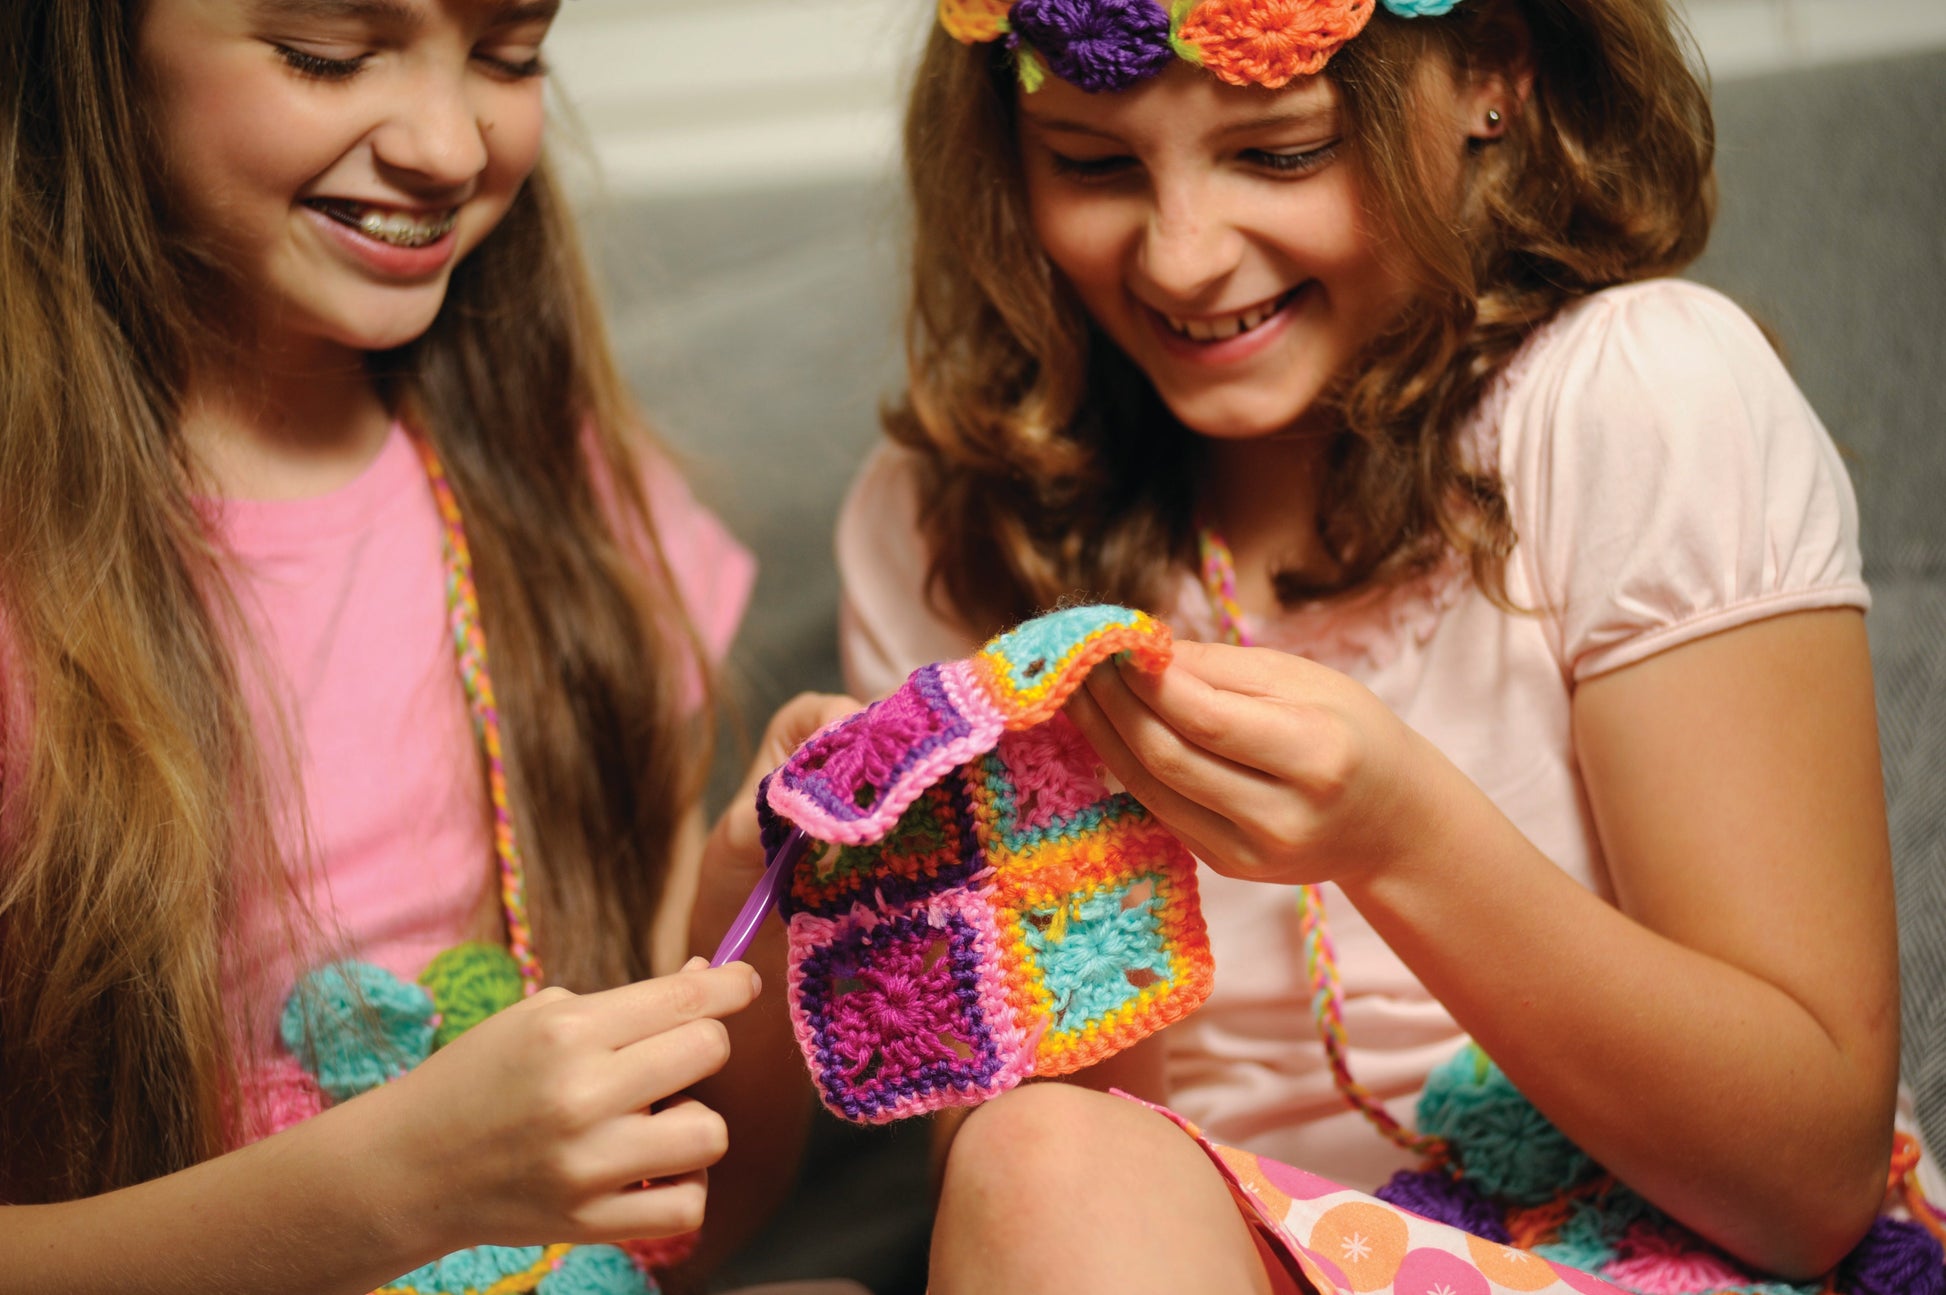 Buy 4M Easy-To-Do Crochet Kit